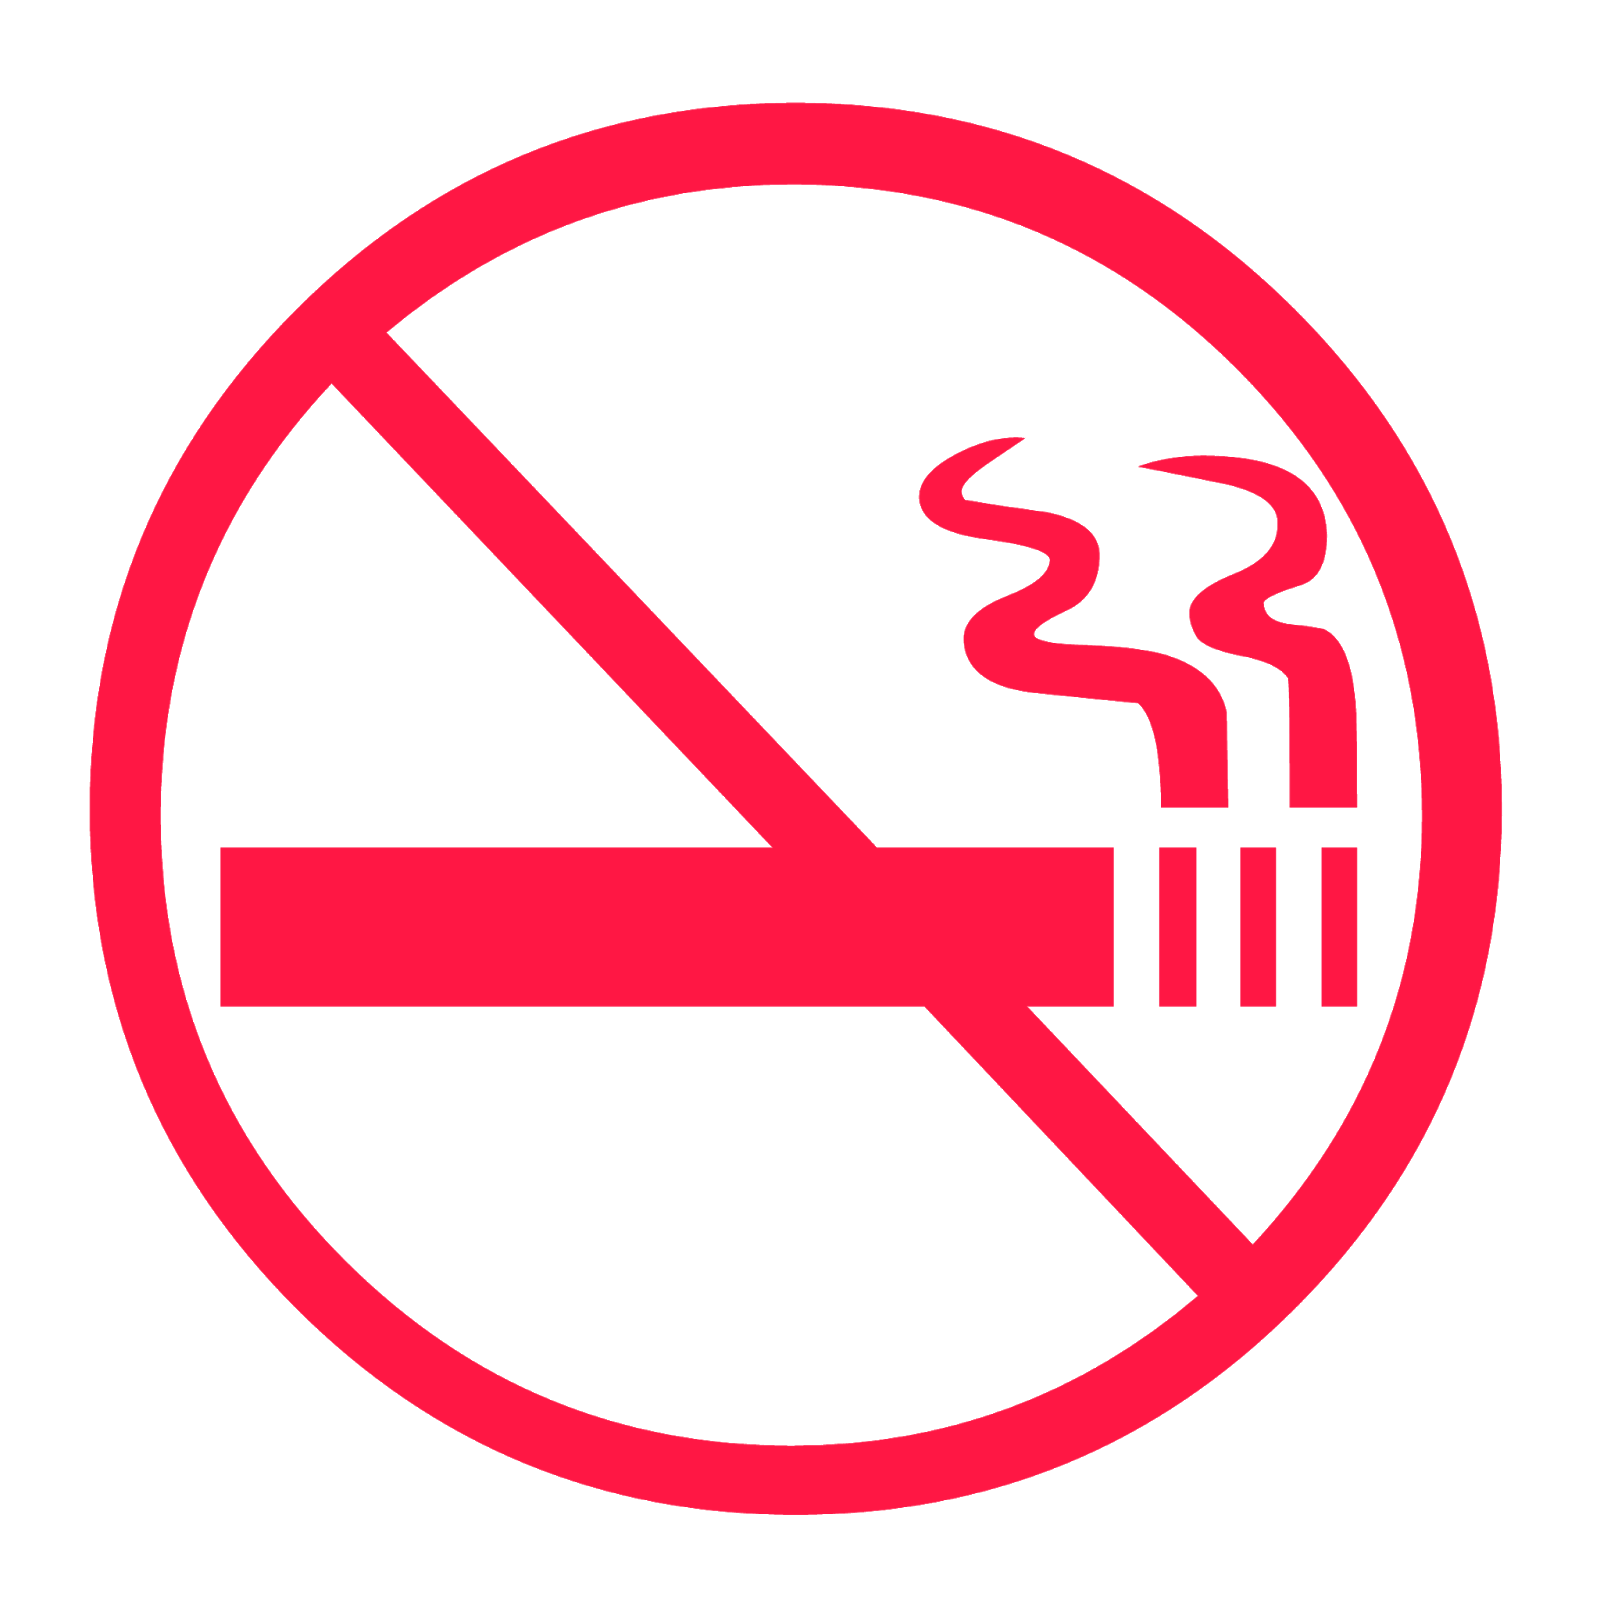 ممنوع التدخين, أحمر, ممنوع التدخين, عدم التدخين PNG والمتجهات للتحميل مجانا